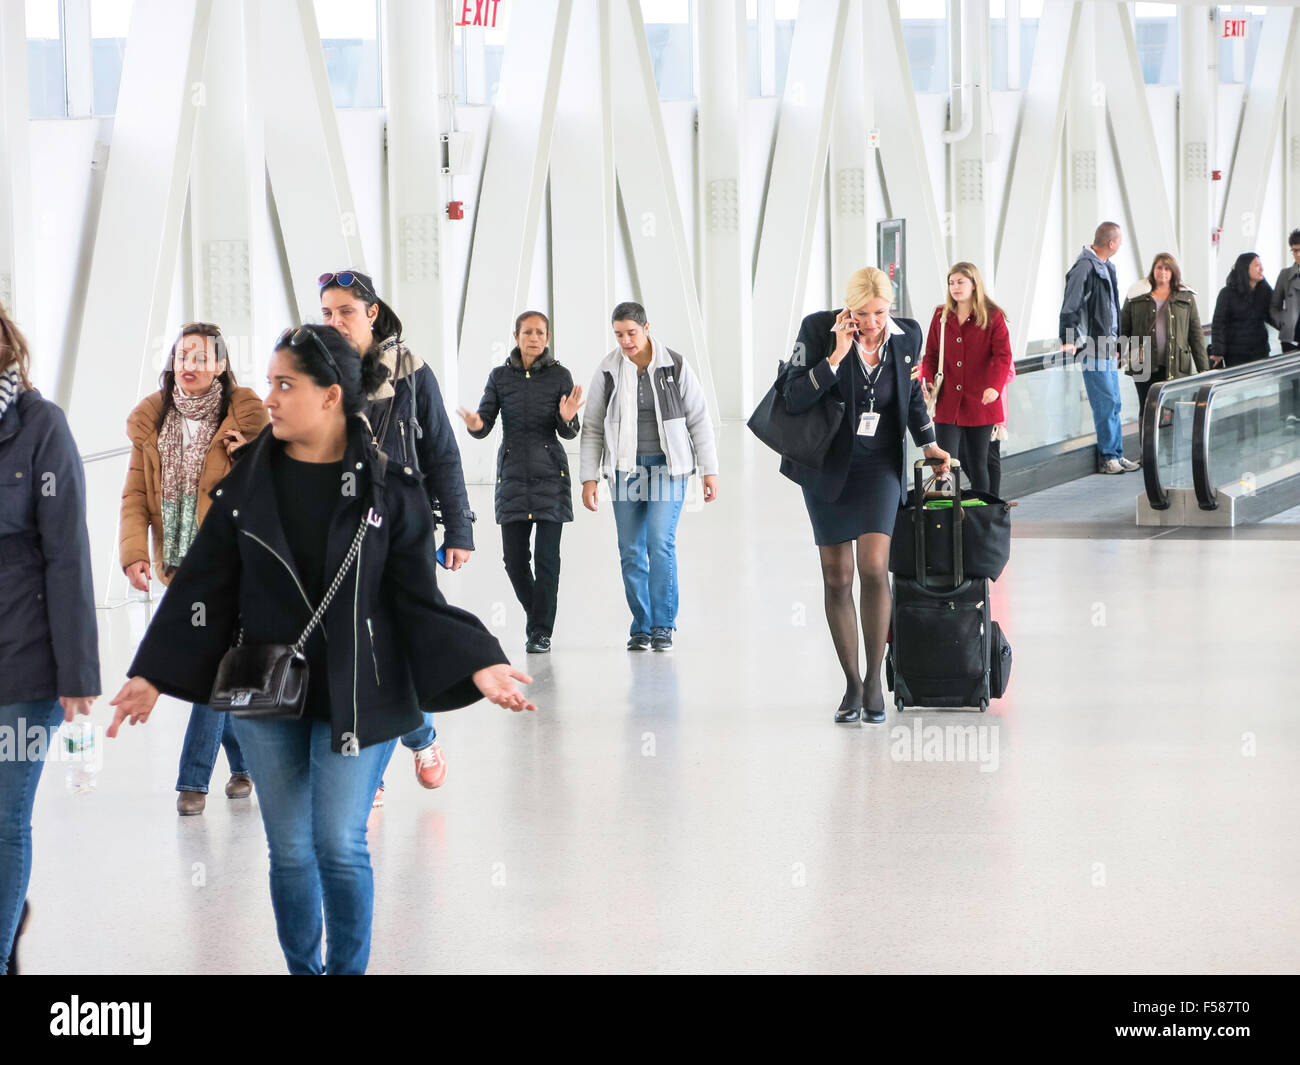 Les voyageurs de l'aéroport, trottoirs roulants à l'aéroport international John F. Kennedy, New York Banque D'Images